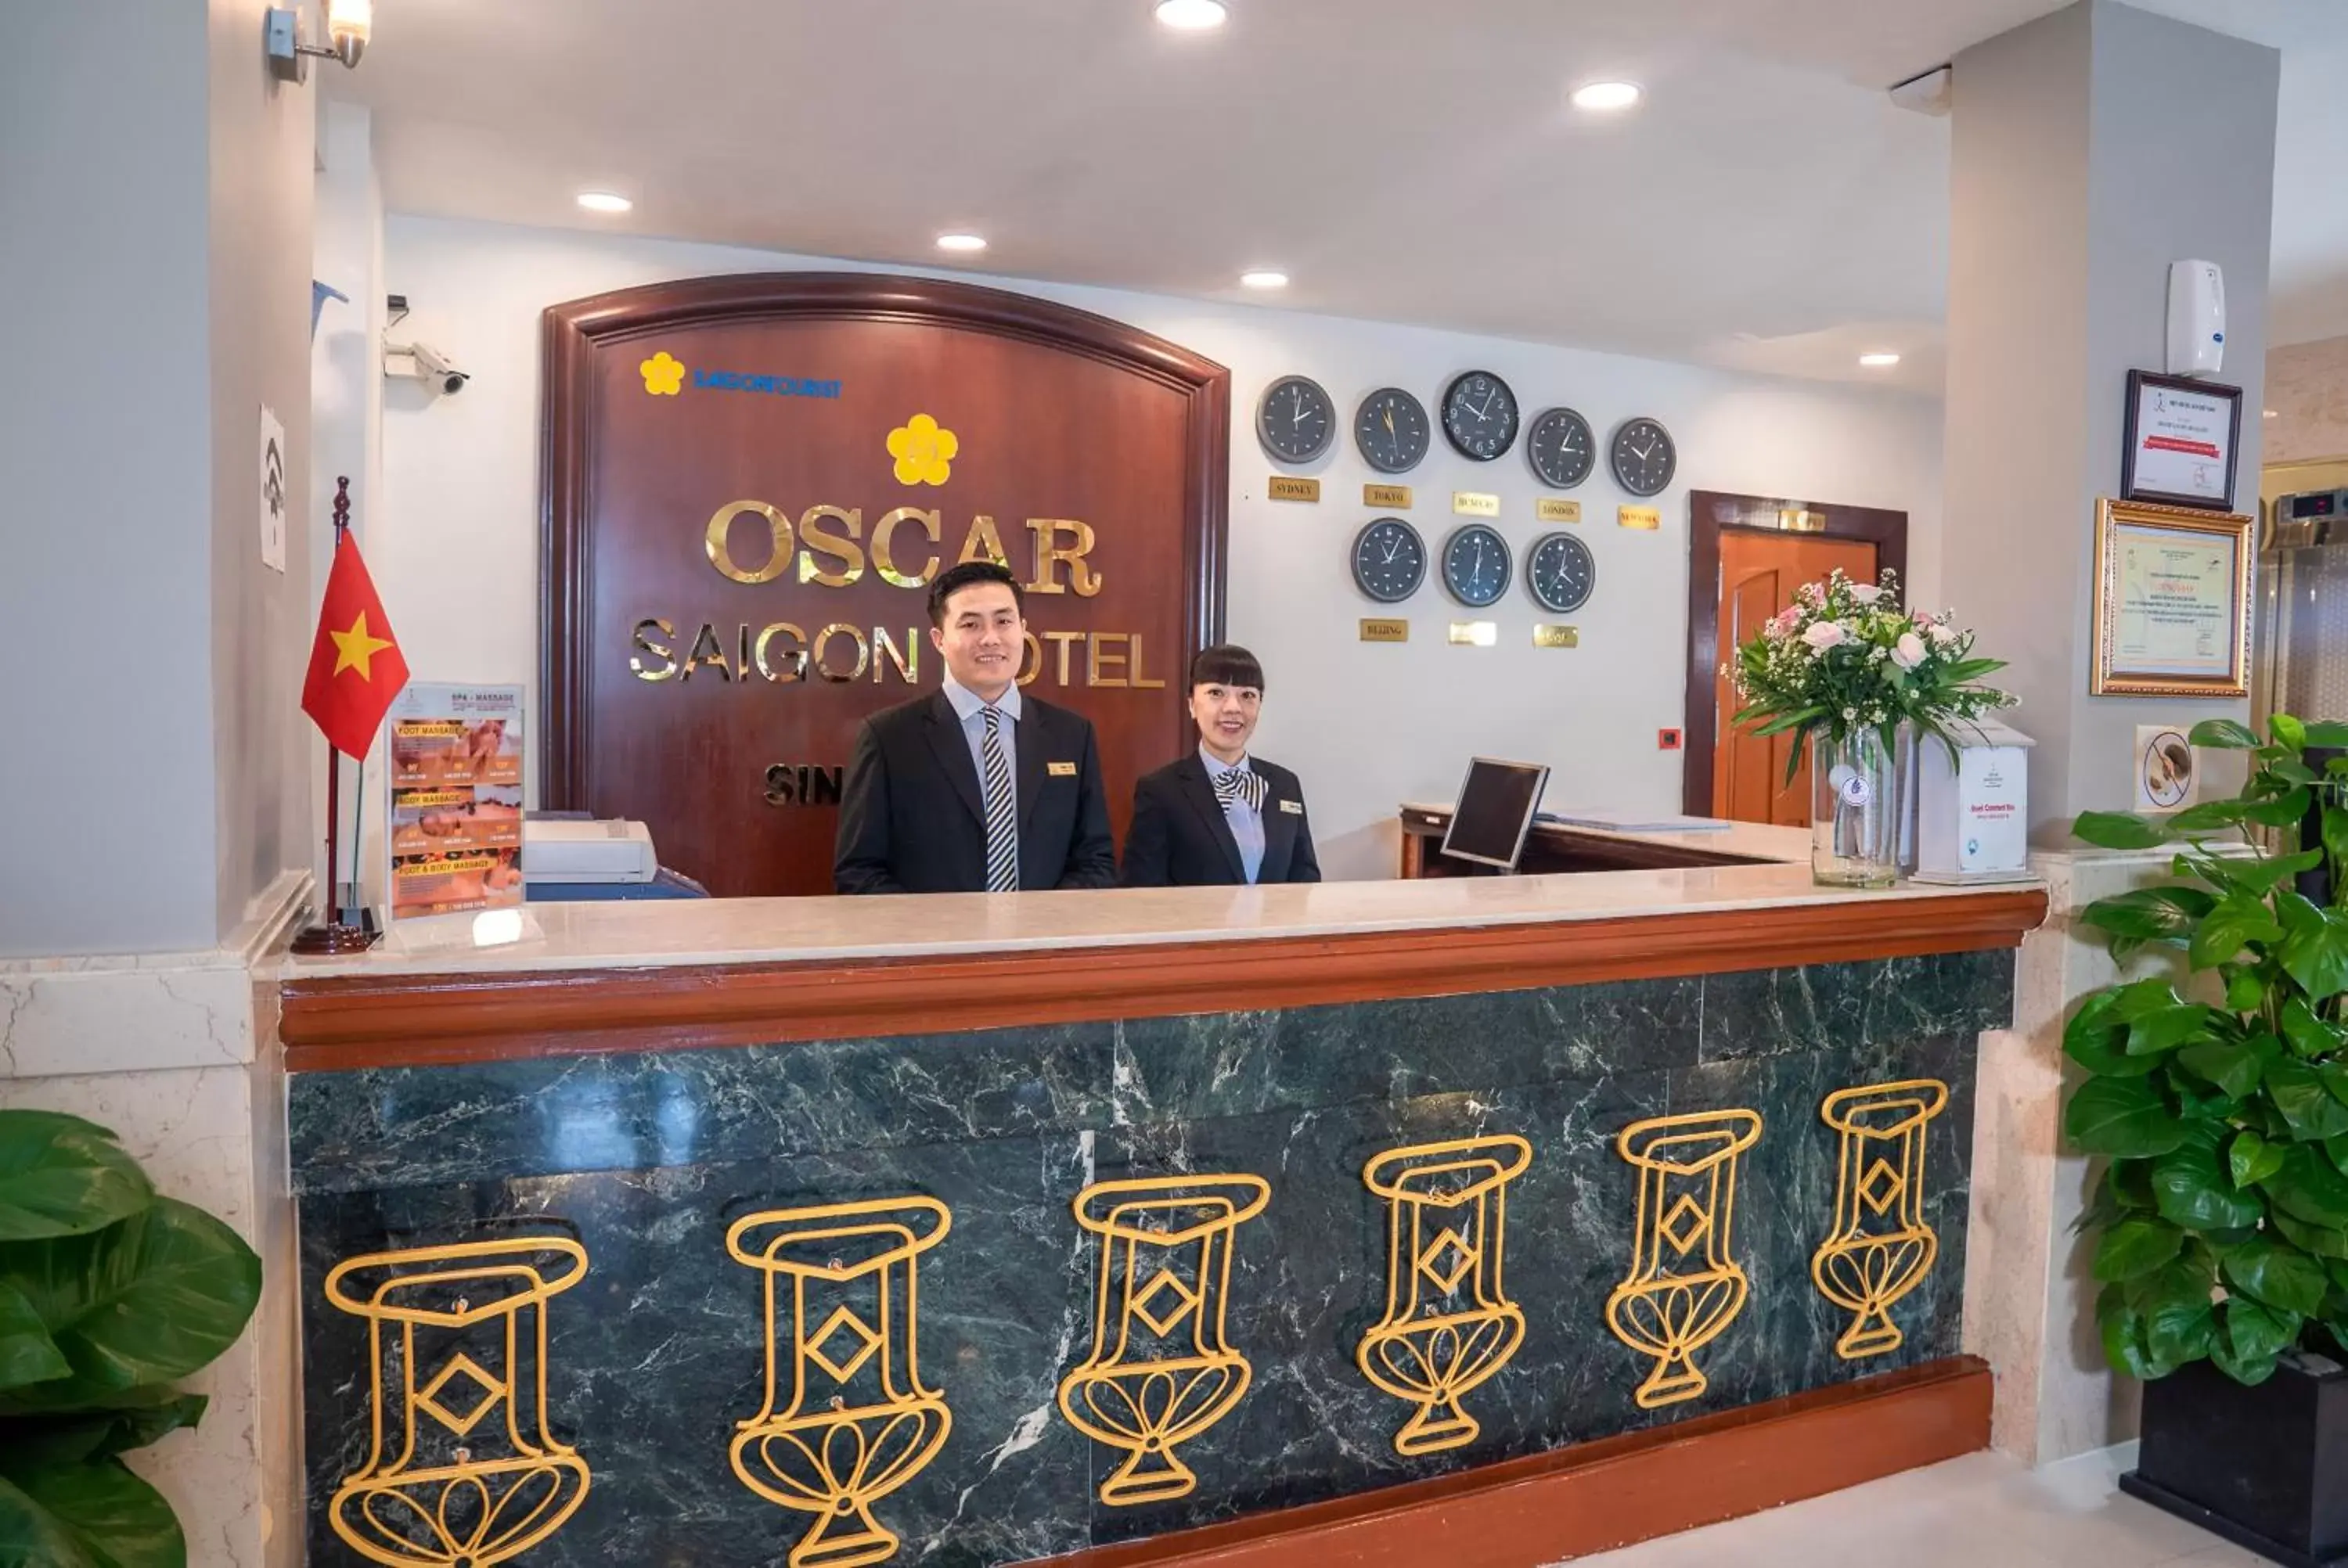 Lobby or reception, Lobby/Reception in Oscar Saigon Hotel